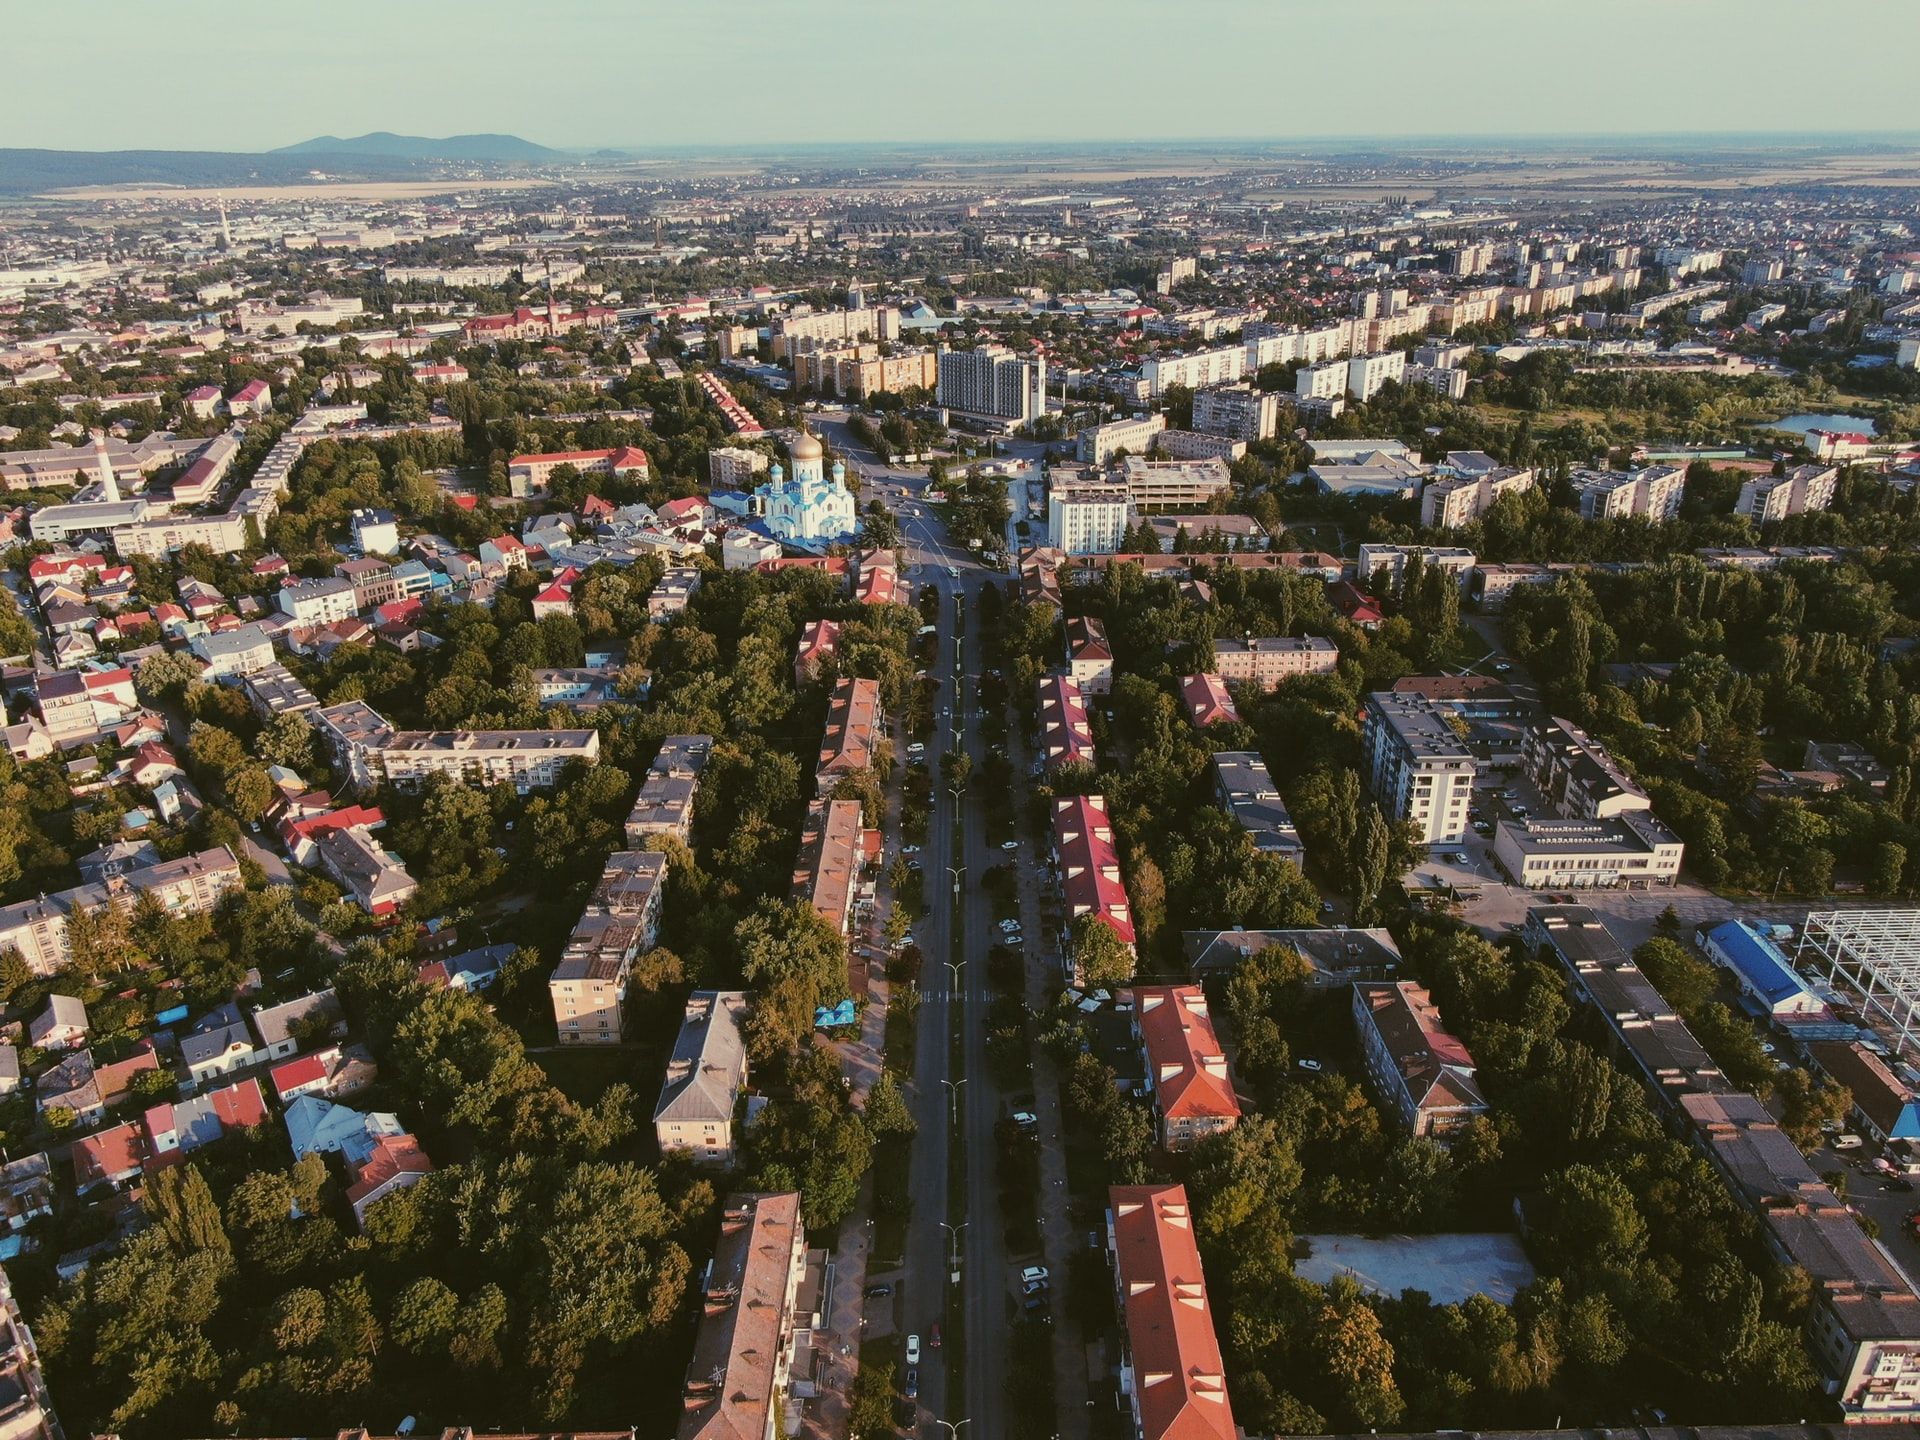 Vista aérea da cidade de Ujhorod, com quarteirões arborizados e predominância de edifícios com até 10 andares.